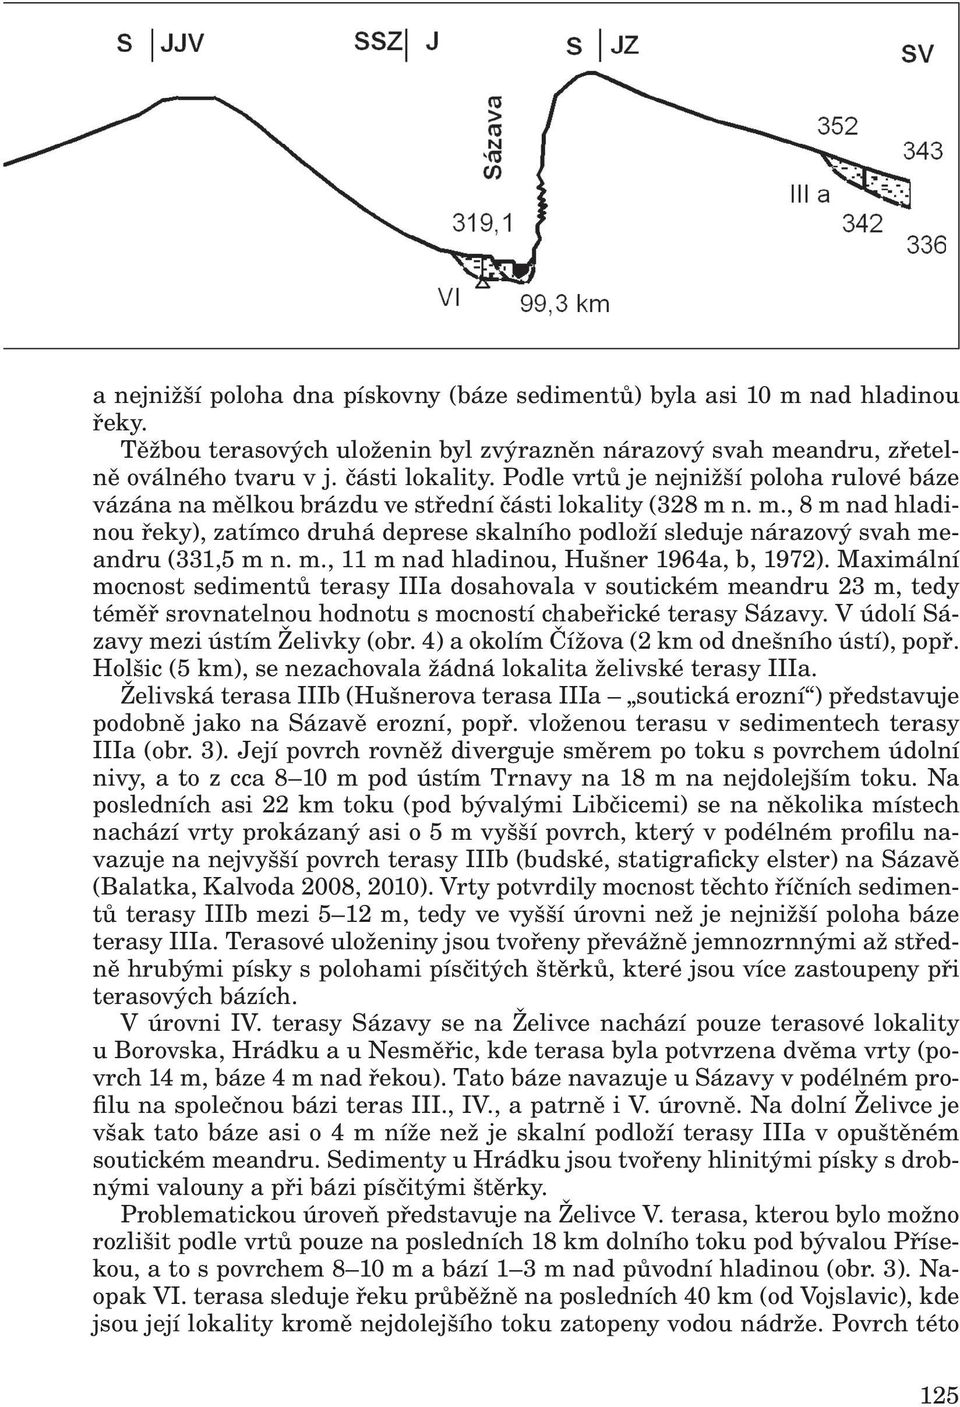 m., 11 m nad hladinou, Hušner 1964a, b, 1972). Maximální mocnost sedimentů terasy IIIa dosahovala v soutickém meandru 23 m, tedy téměř srovnatelnou hodnotu s mocností chabeřické terasy Sázavy.